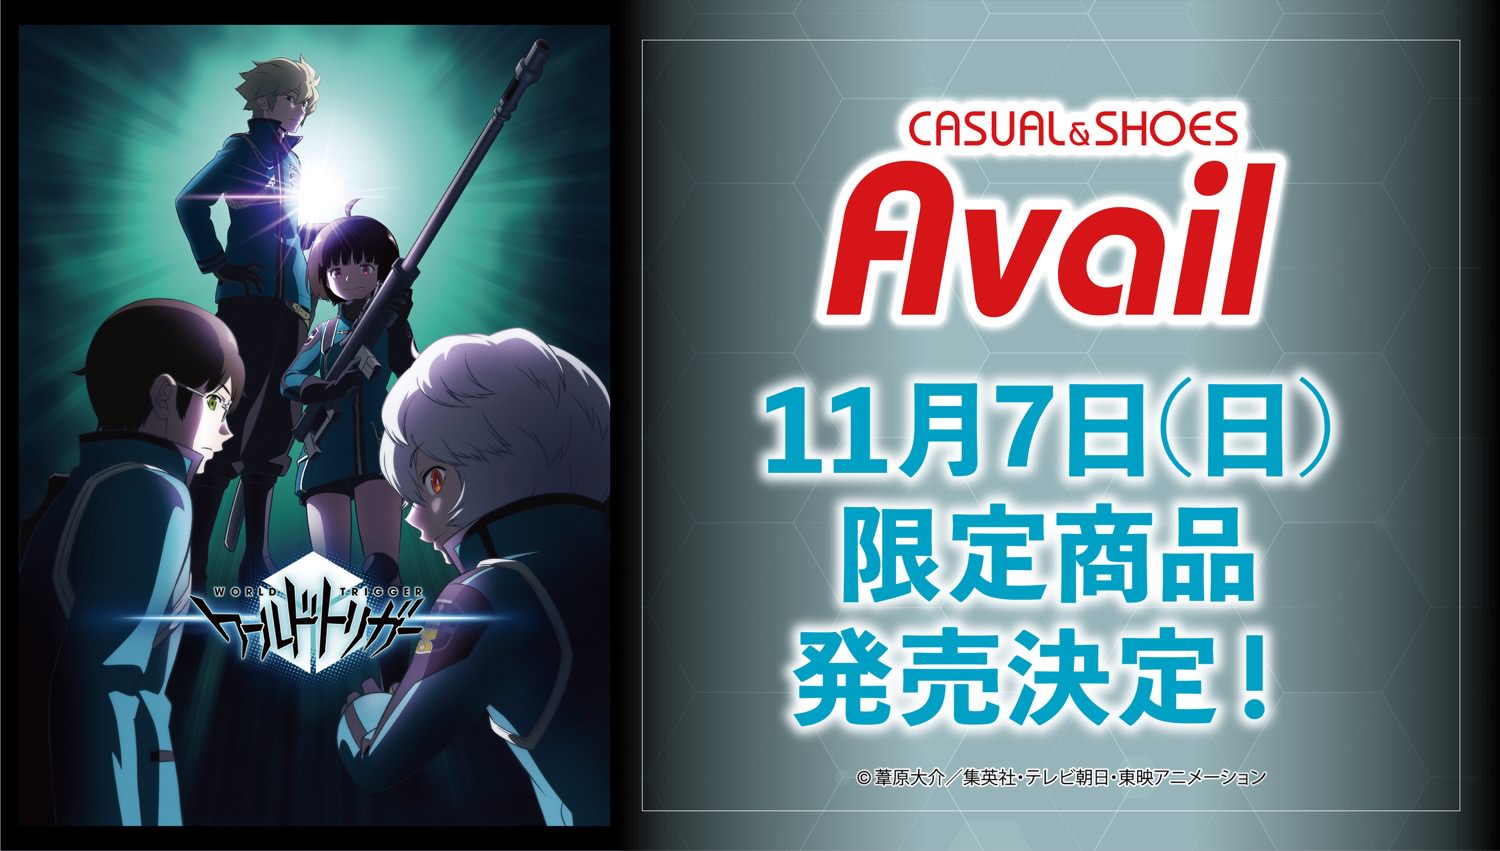 ワールドトリガー × Avail(アベイル) 11月7日よりコラボ第2弾発売!